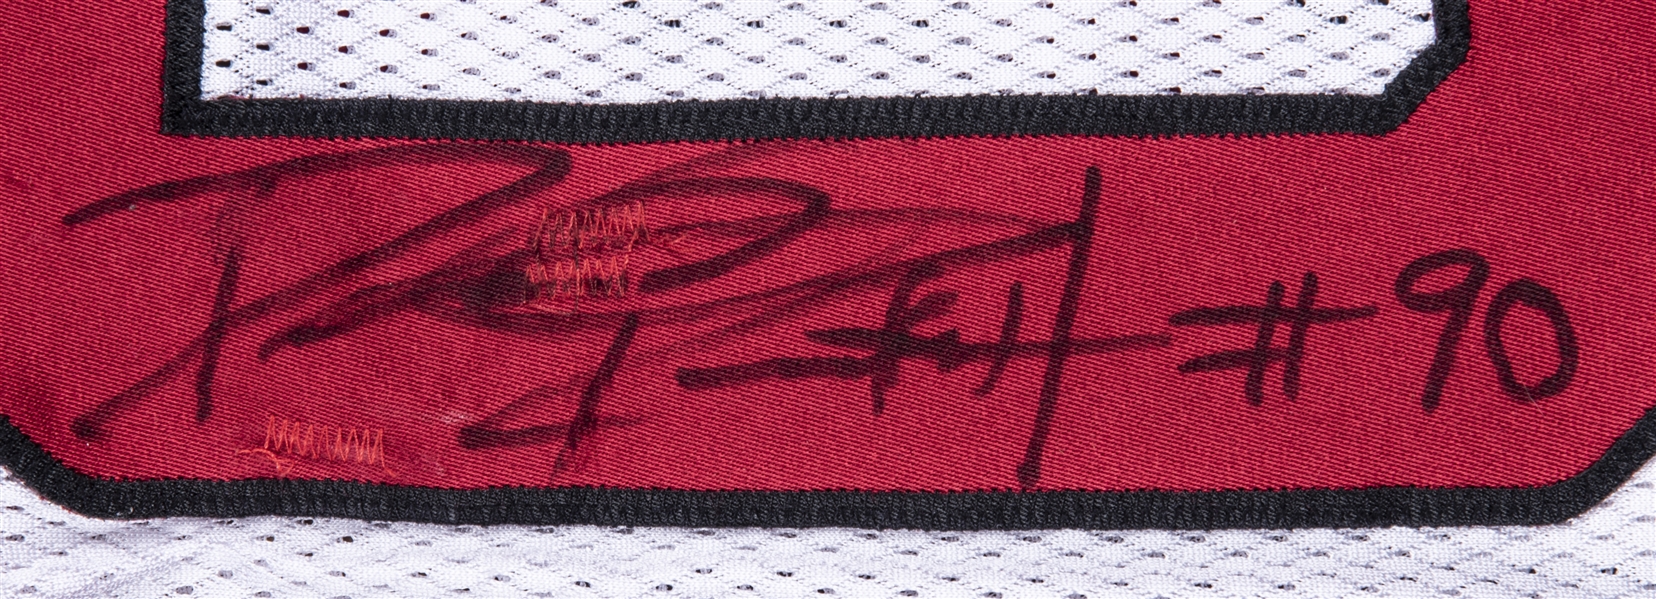 NFL Arizona Cardinals Darnell Dockett #90 16x20 Autograph Signed JSA Card  Photo - Sinbad Sports Store